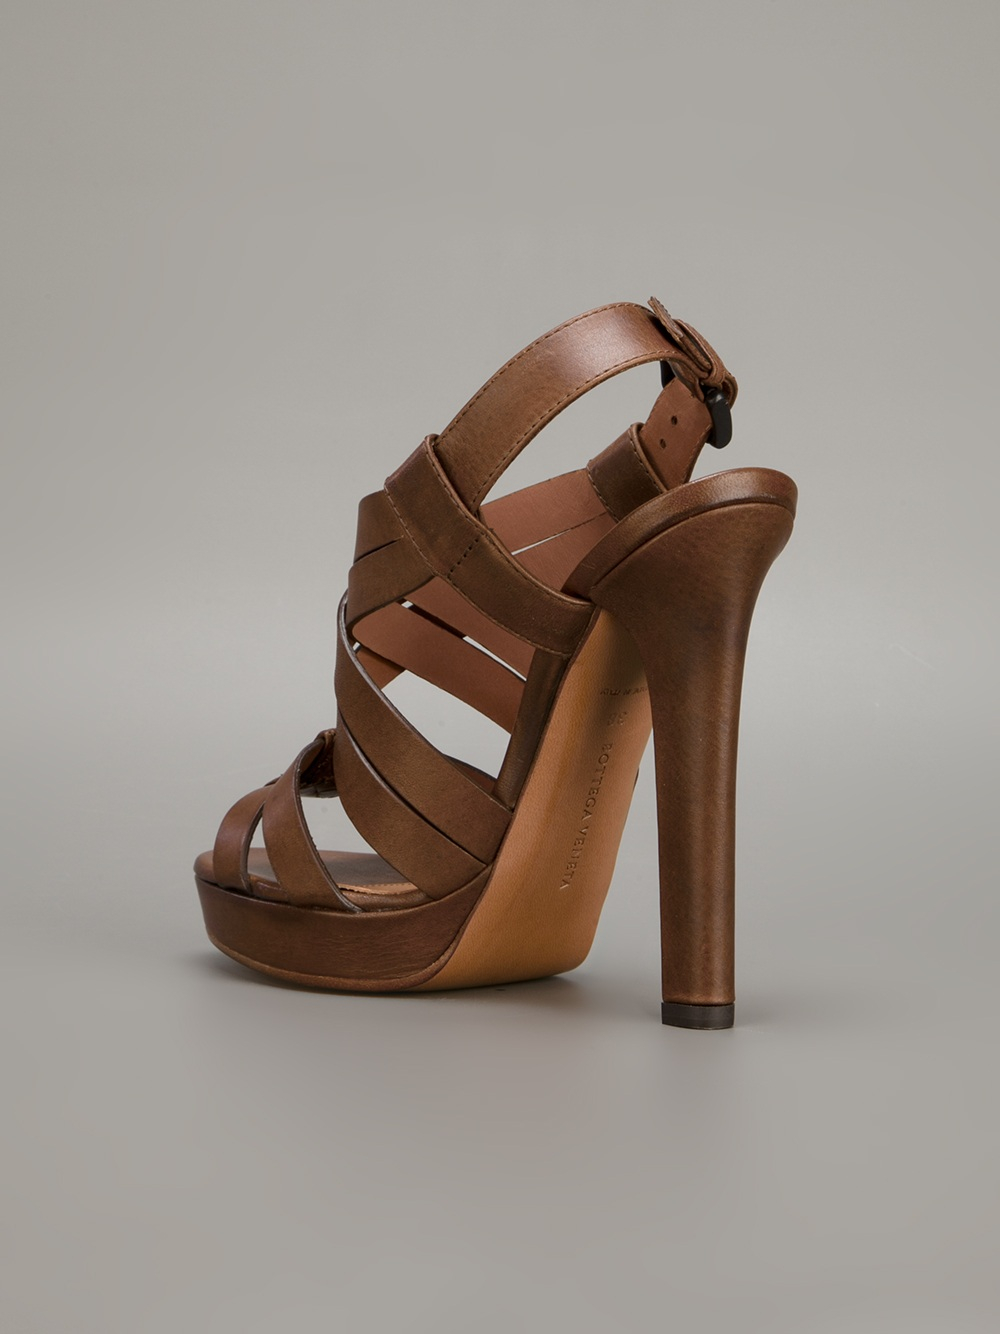 Lyst - Bottega Veneta Strappy Sandal in Brown